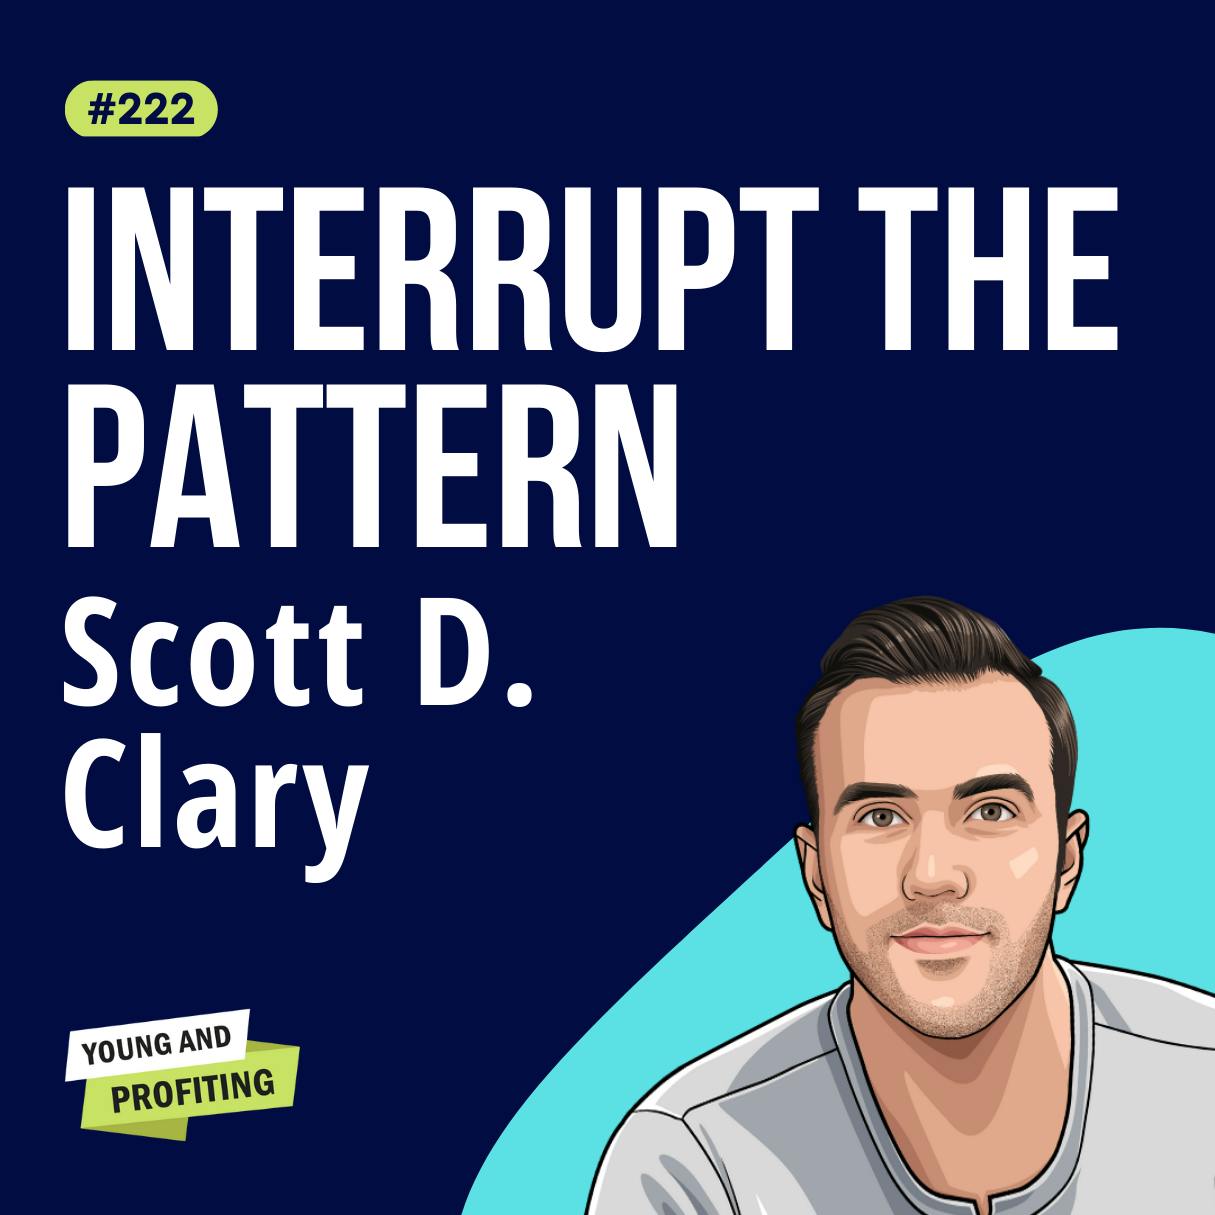 Scott D. Clary: Sales Strategies That Close Deals